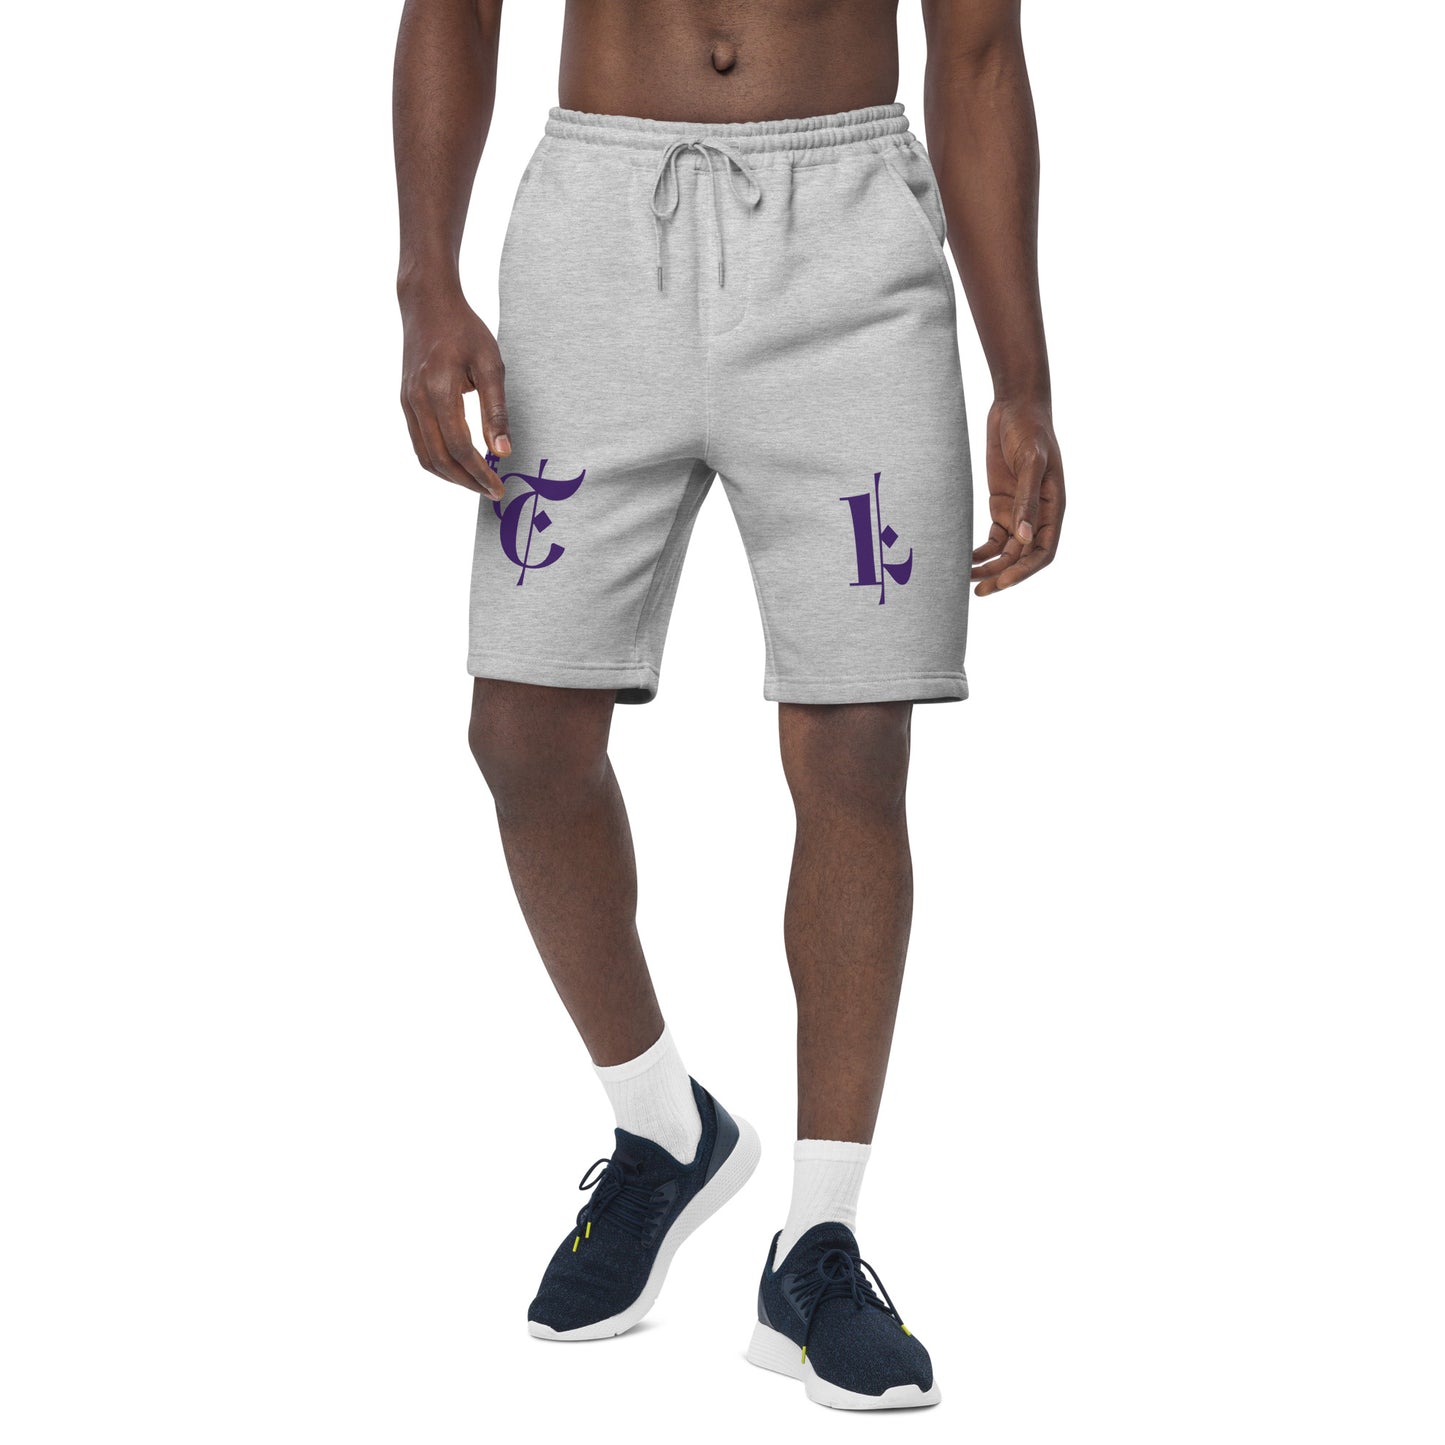 Men's Fleece Shorts Purple #TL